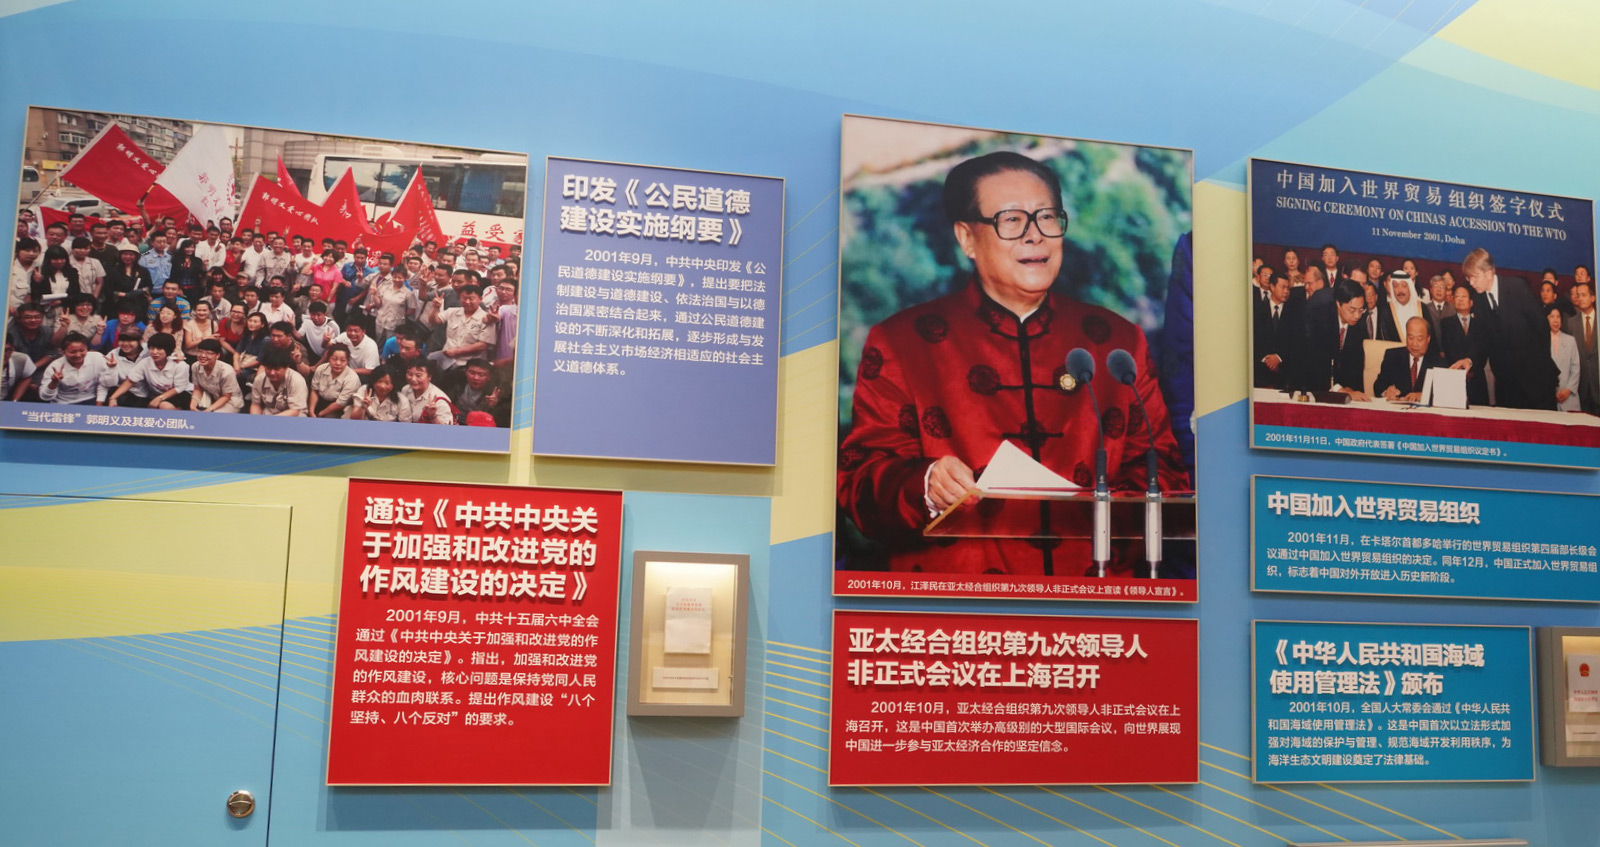 亞太經合組織第九次領導非正式會議在上海召開﹔中國加入世界貿易組織﹔印發《公民道德建設實施綱要》﹔通過《中共中央關於加強和改進黨的作風建設的決定》﹔《中華人民共和國海域使用管理法》頒布。